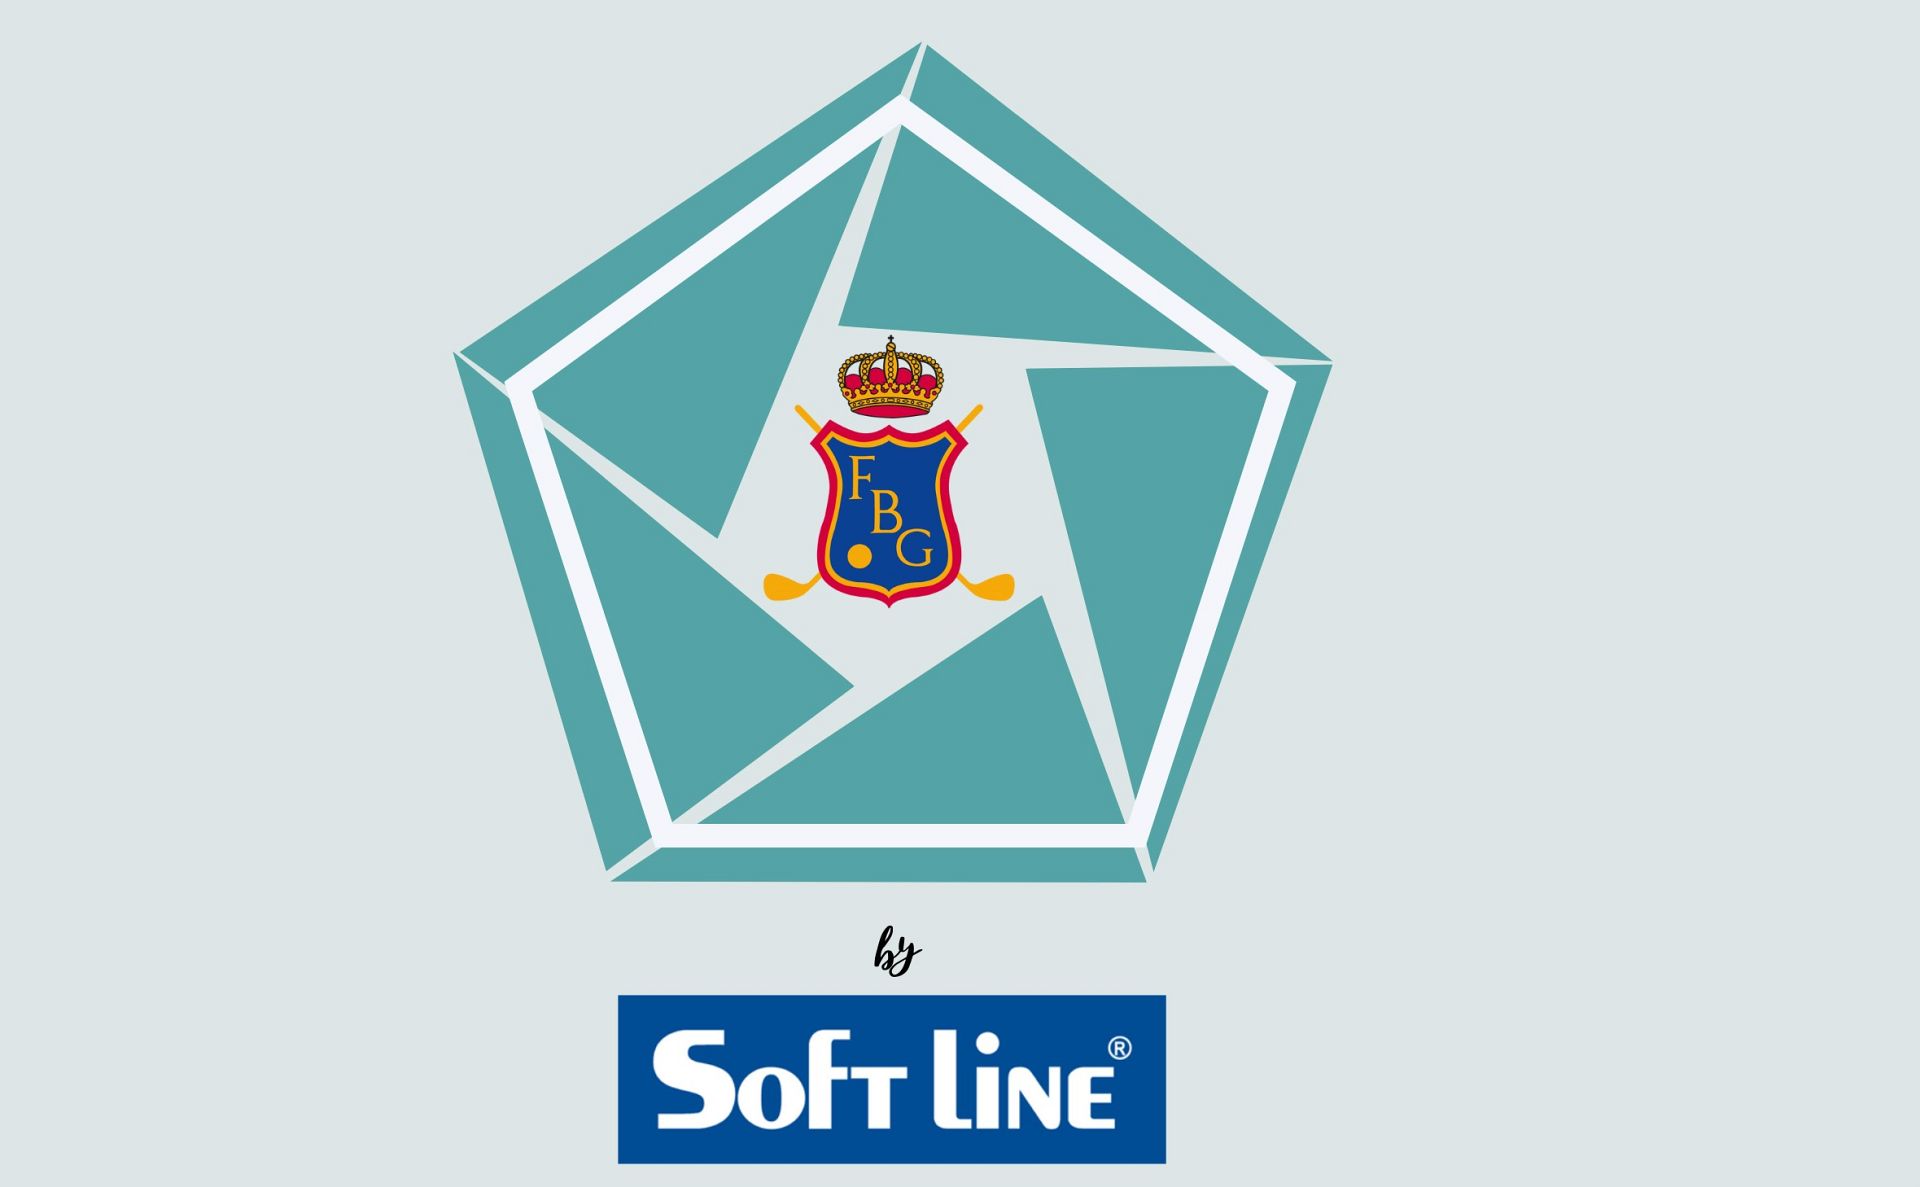 SOFT LINE Patrocinador Oficial del Circuito Pentagonal FBG